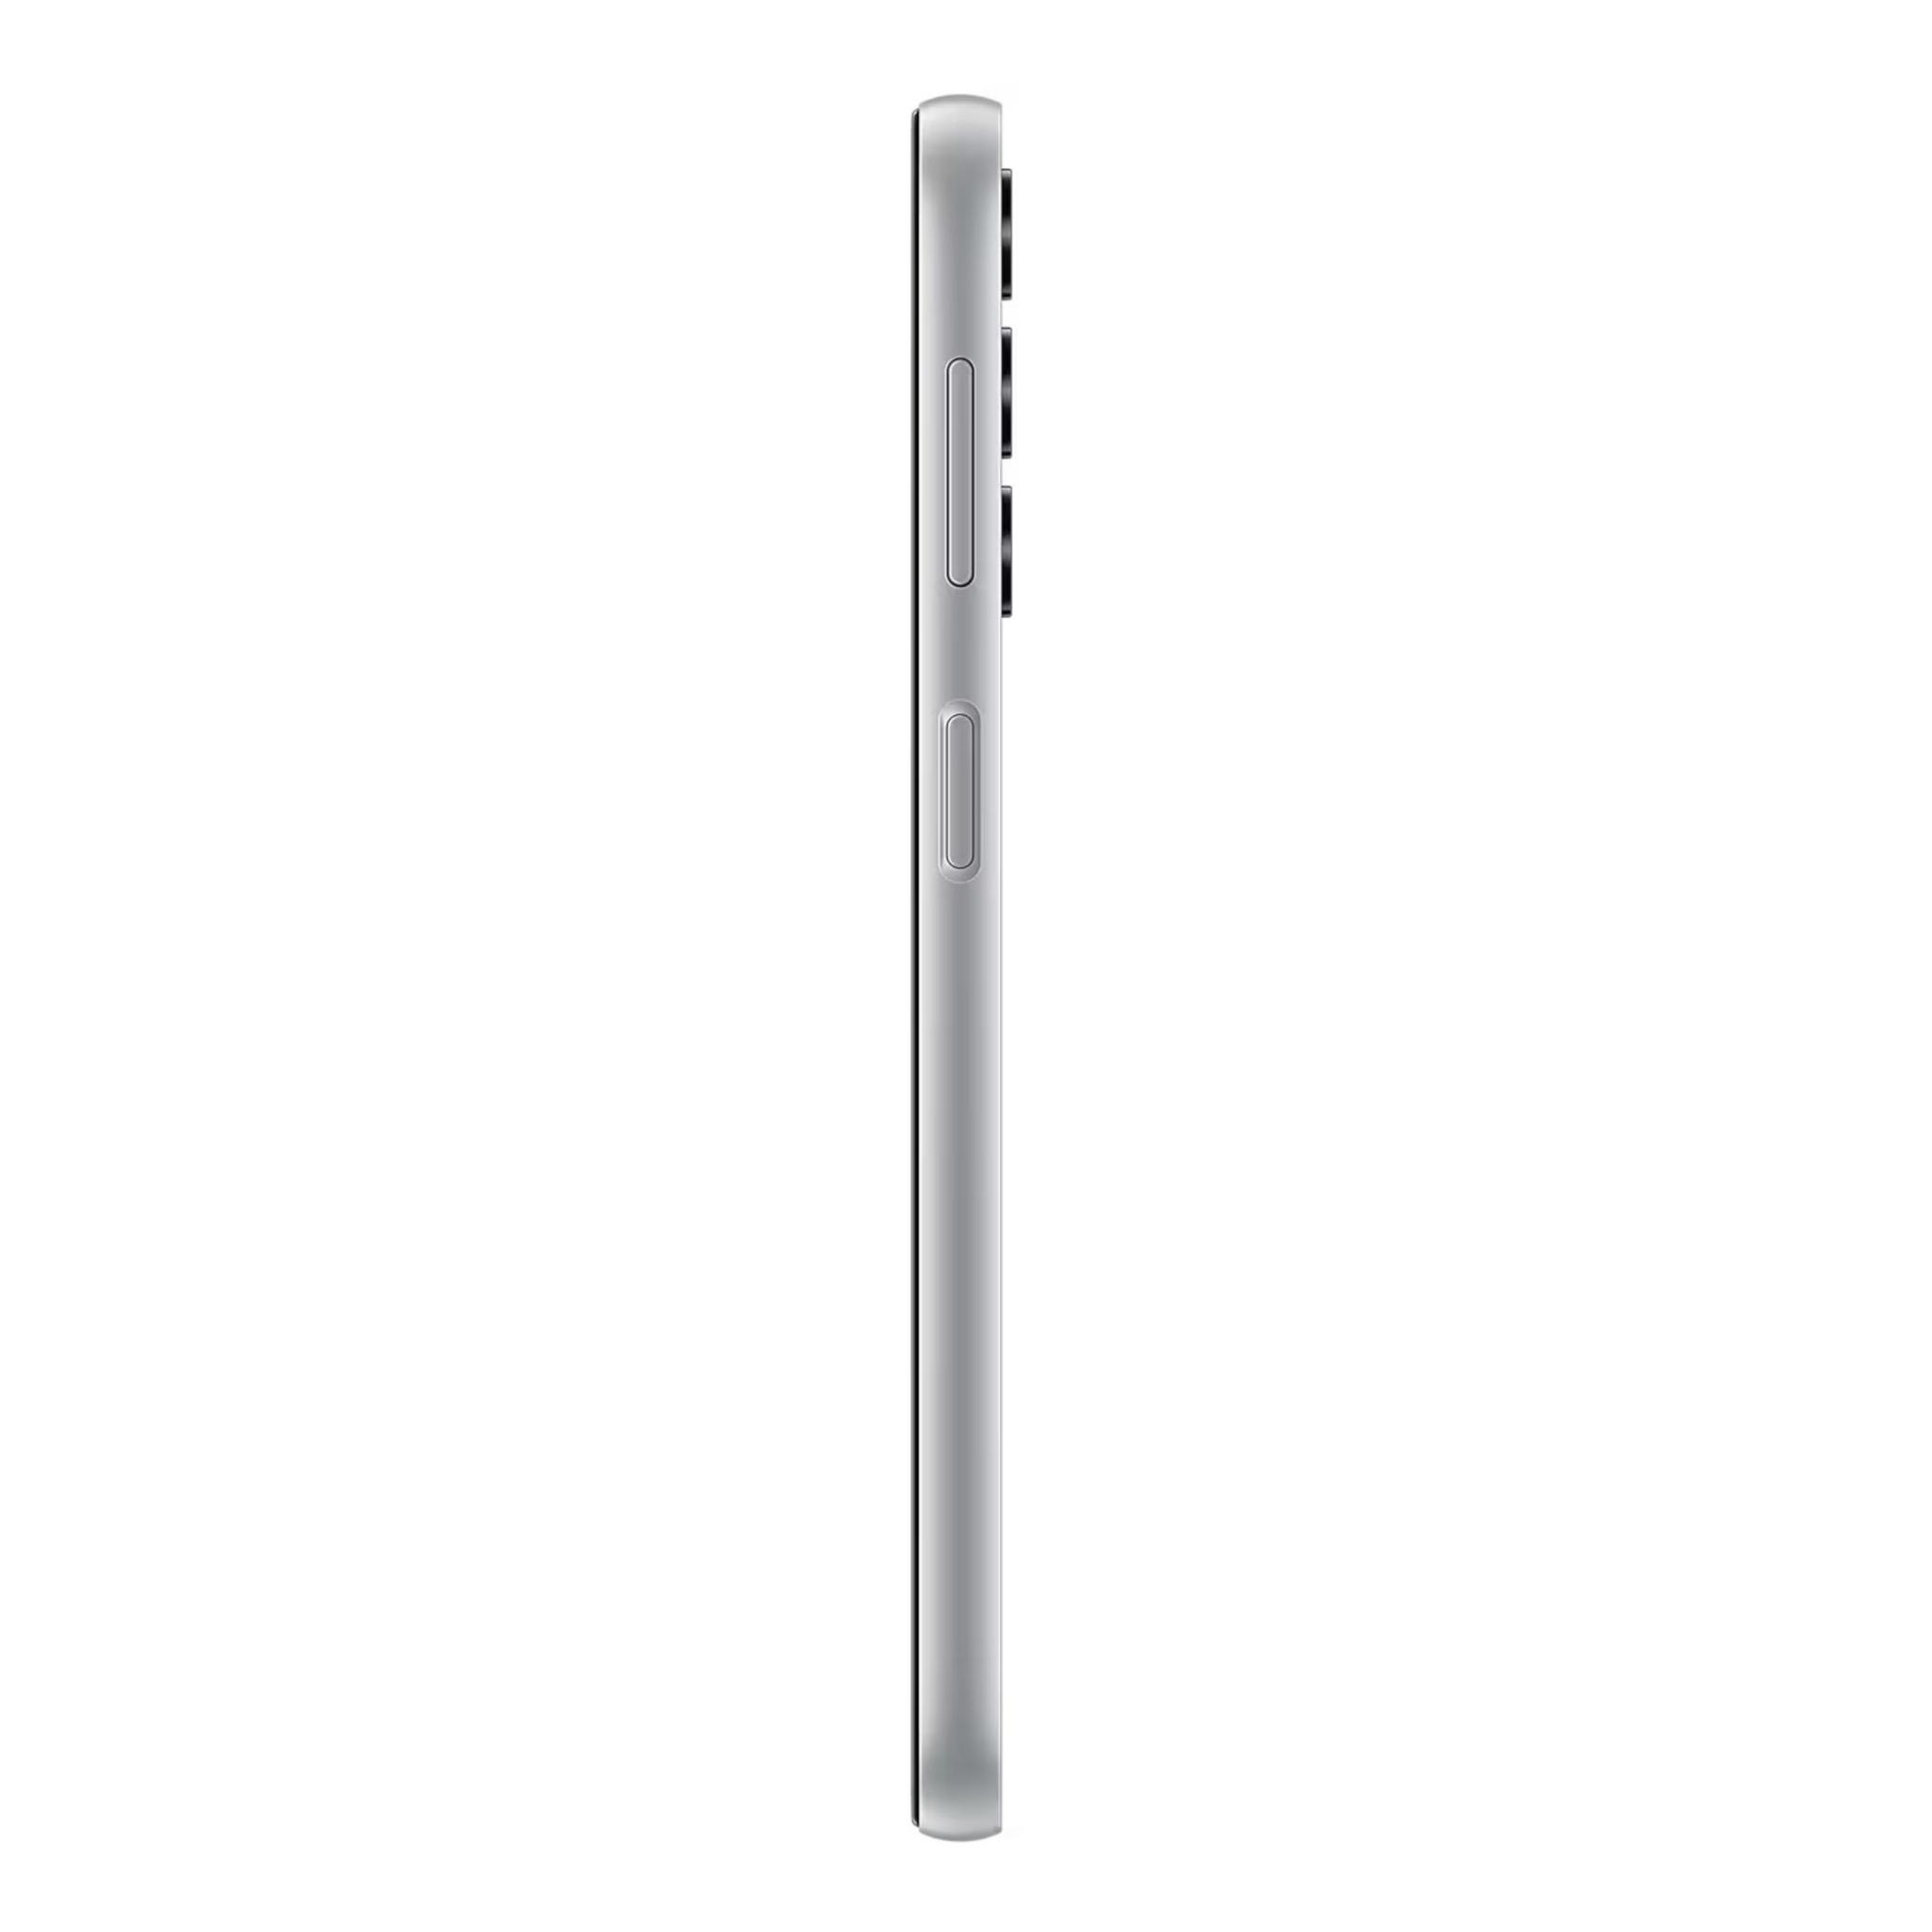 Samsung Galaxy A24, 6GB RAM, 128GB Phone - Silver